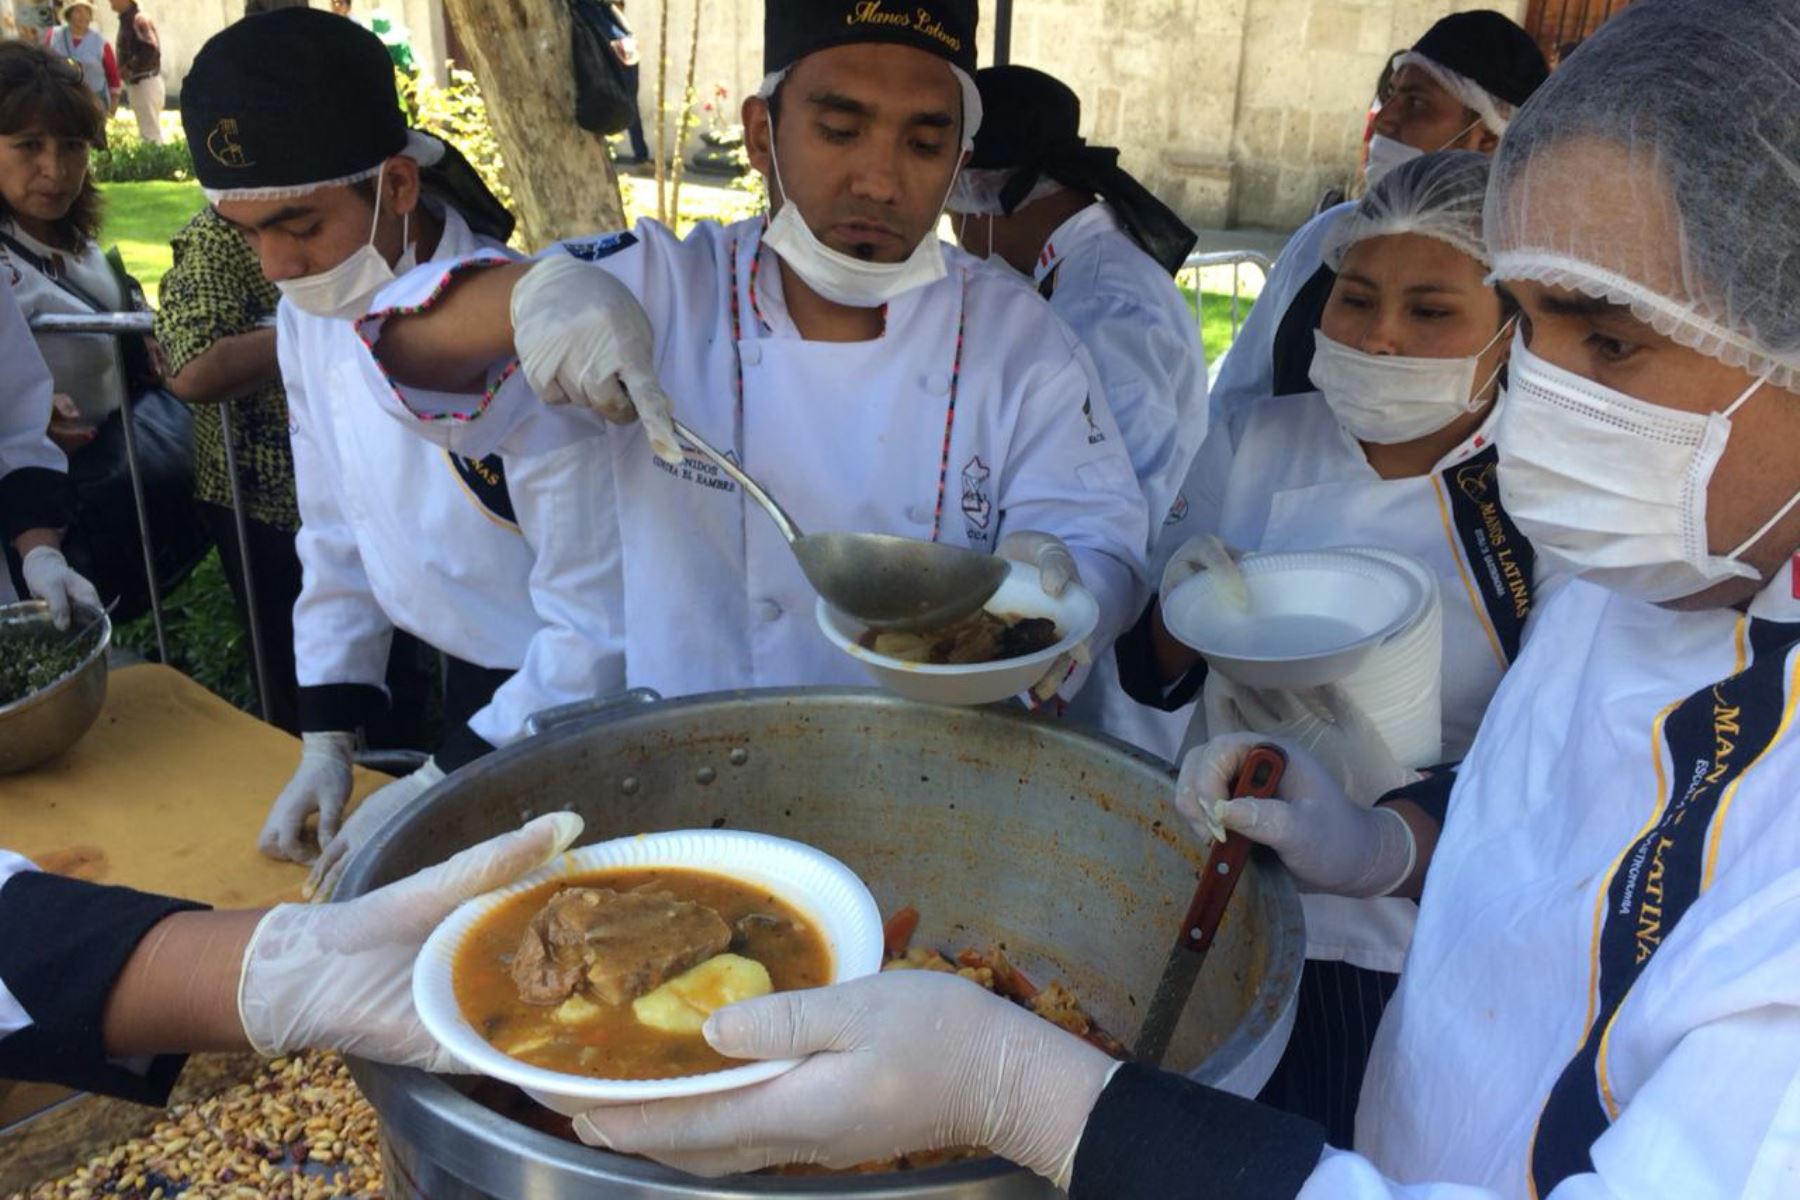 Más de 1,000 platos de chaque, tradicional plato arequipeño, se distribuyeron hoy entre los pobladores que llegaron a la plaza San Francisco.